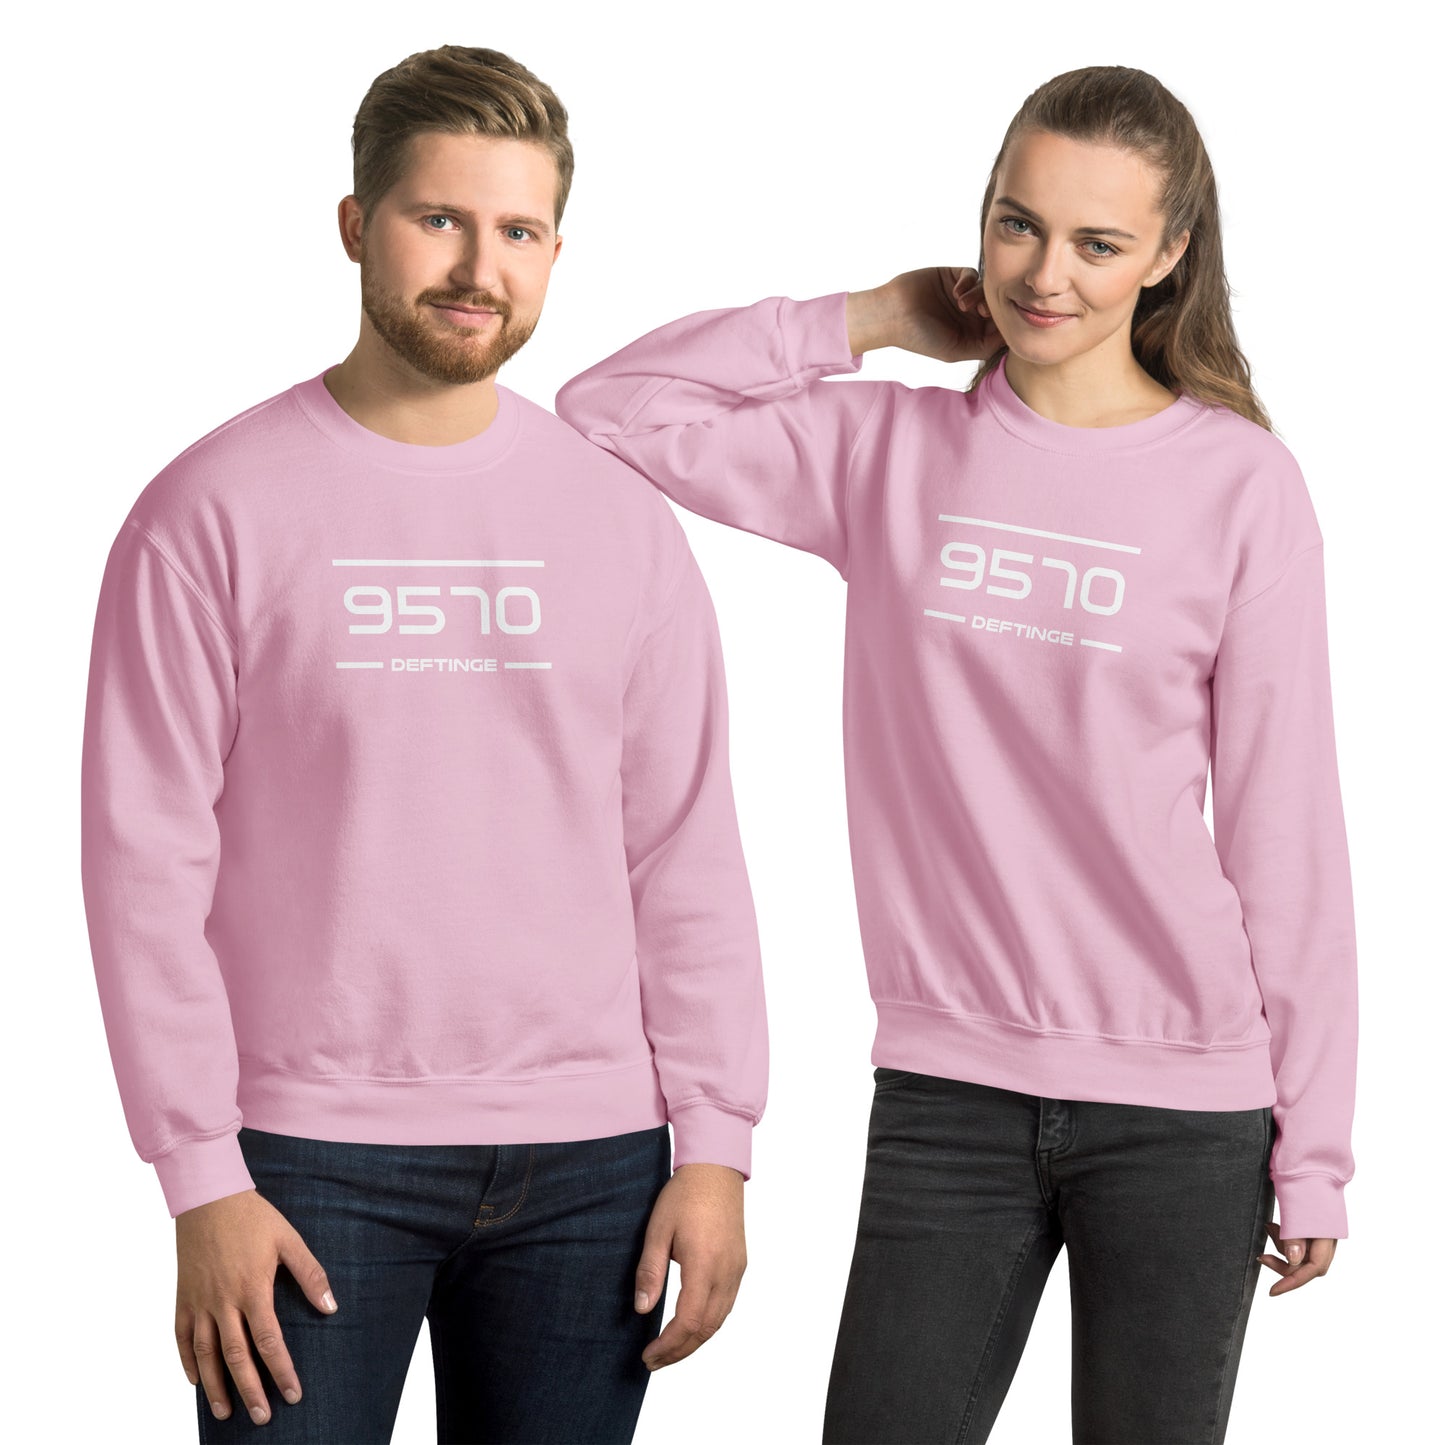 Sweater - 9570 - Deftinge (M/V)